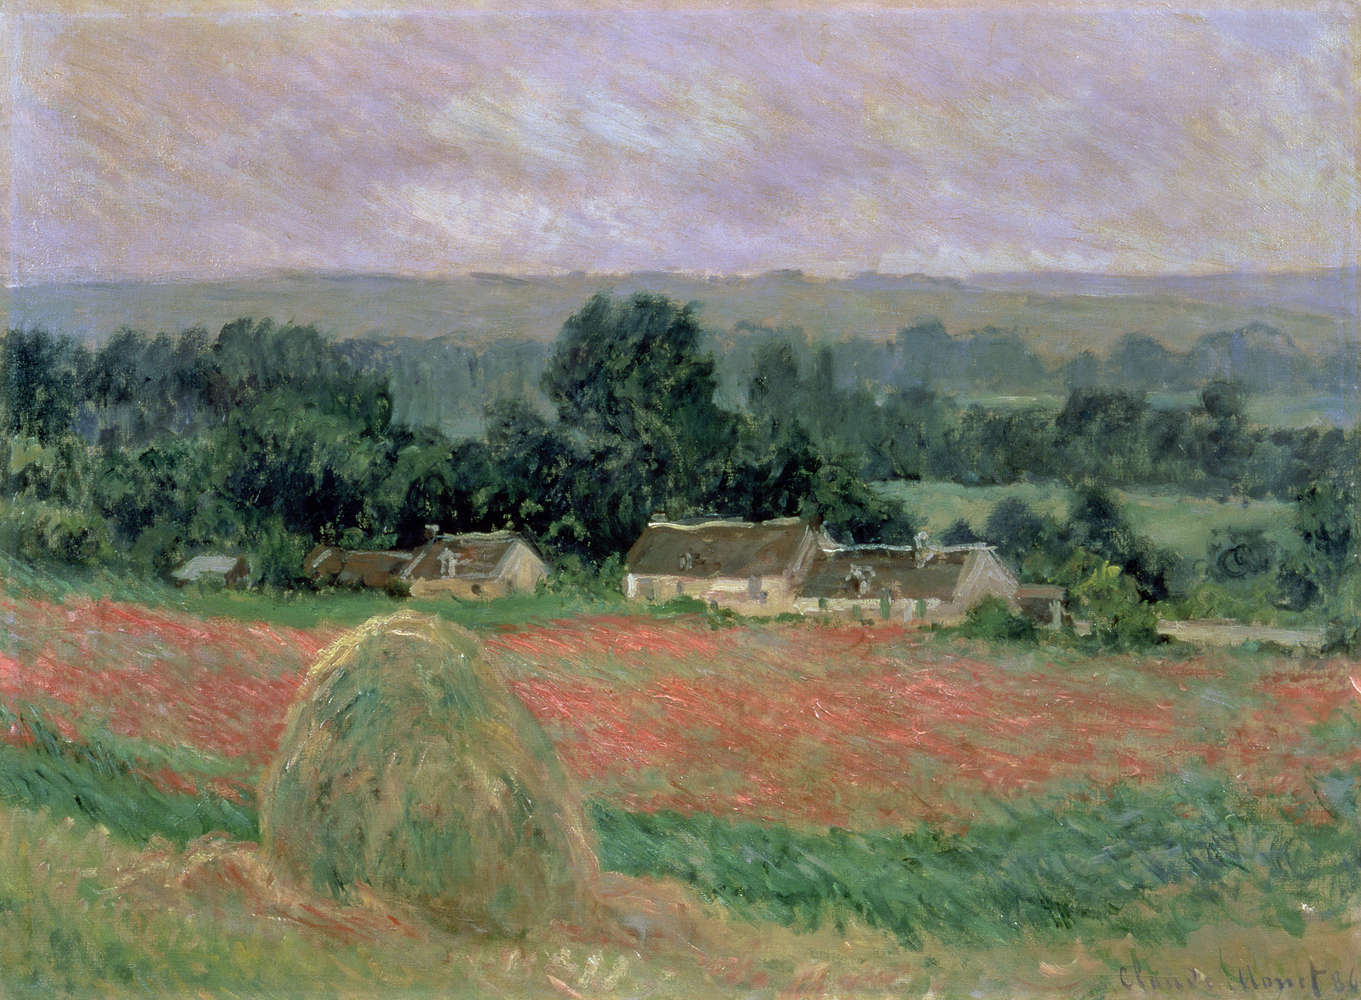             Pagliaio a Giverny", murale di Claude Monet
        